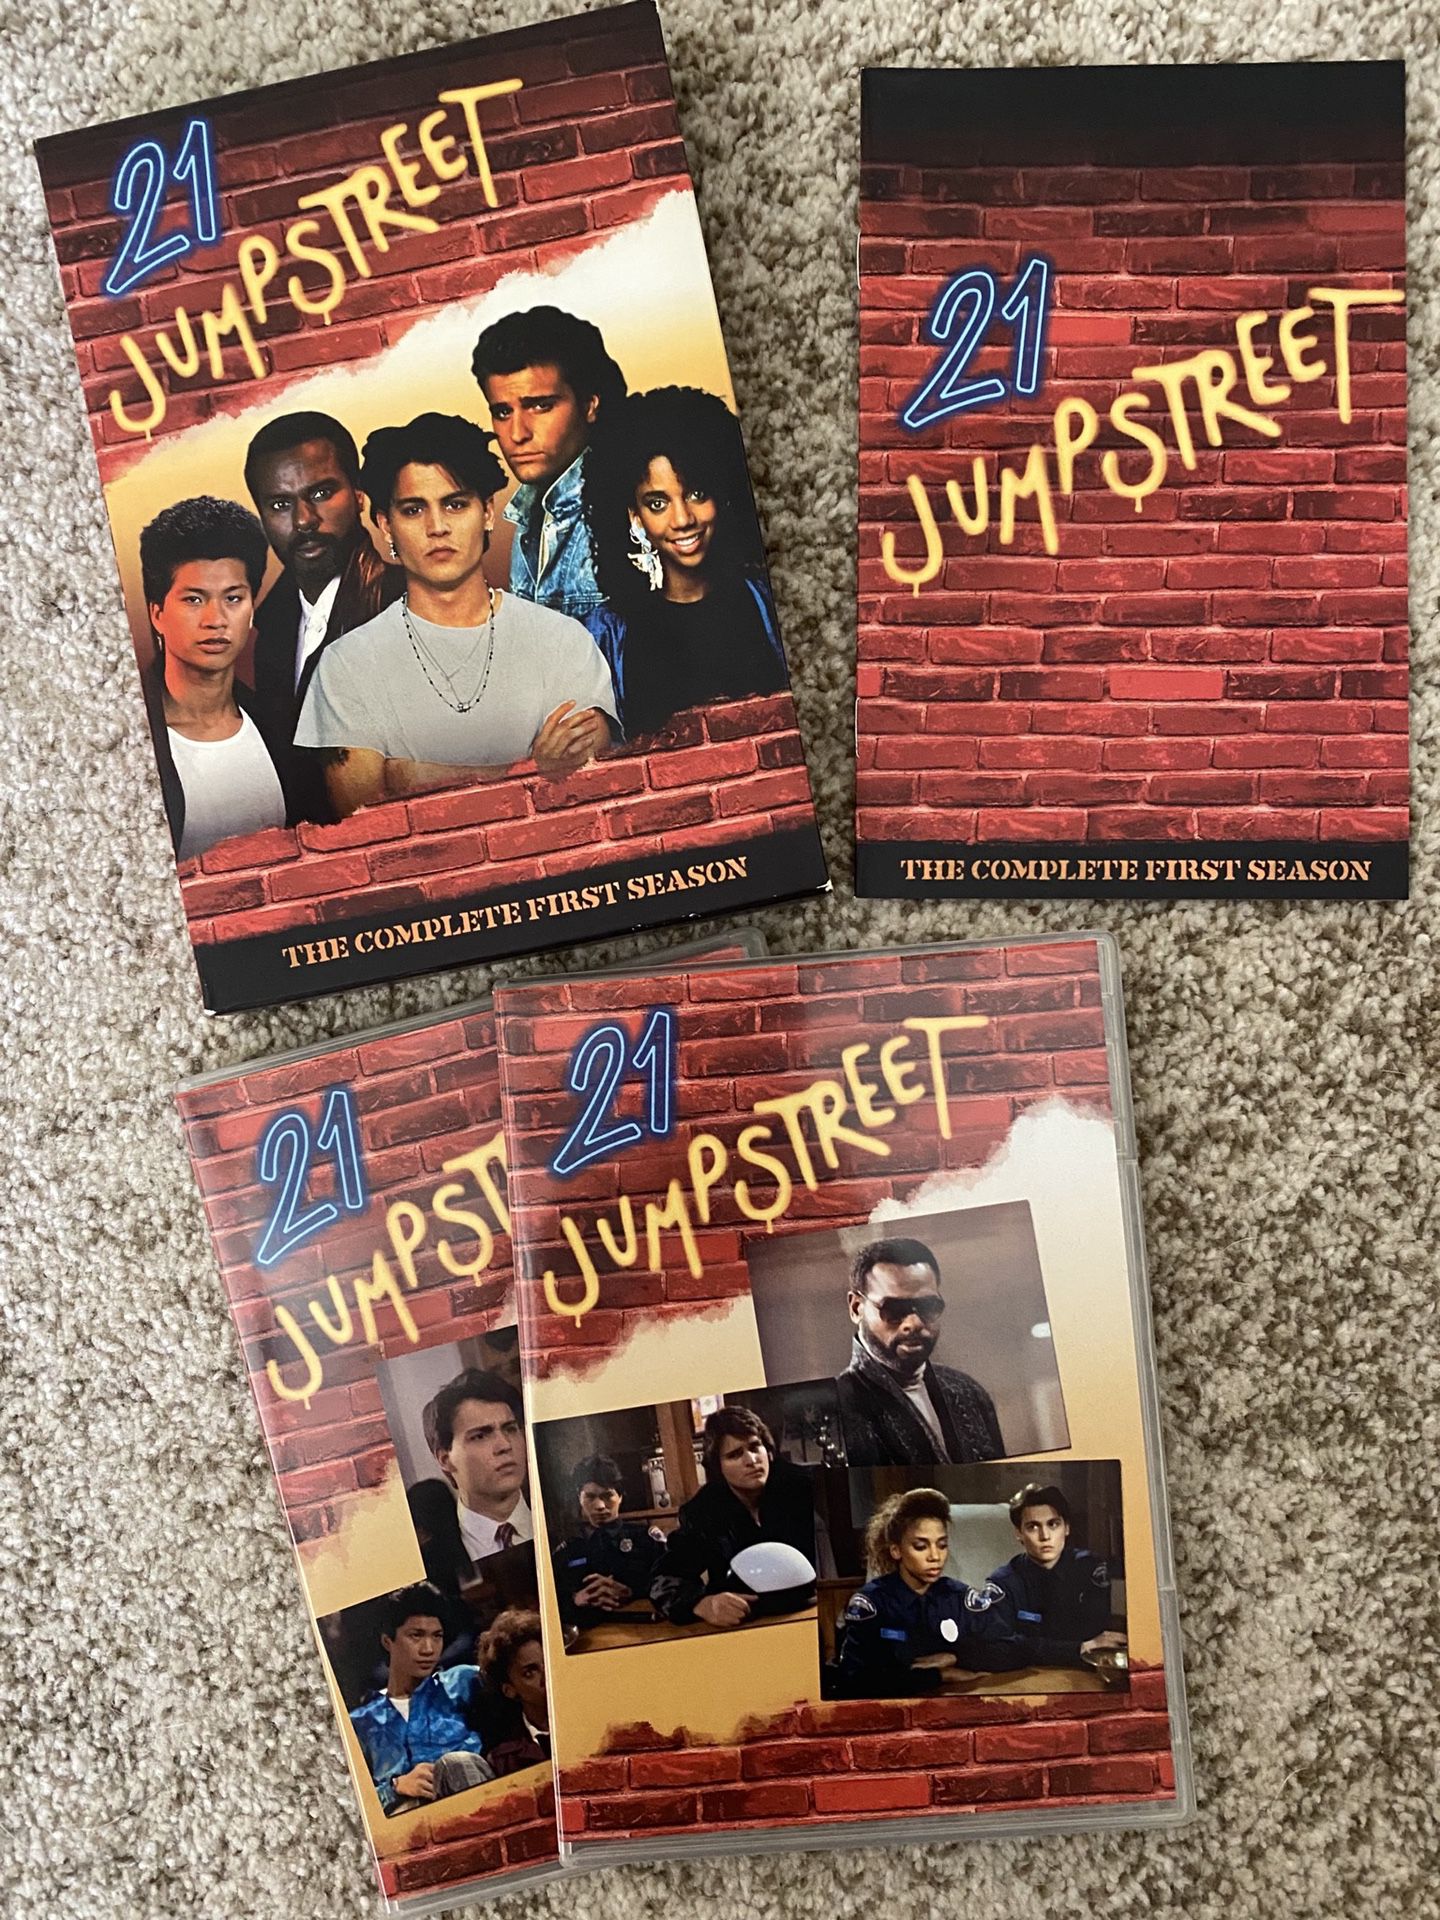 21 Jumpstreet Season 1 DVD